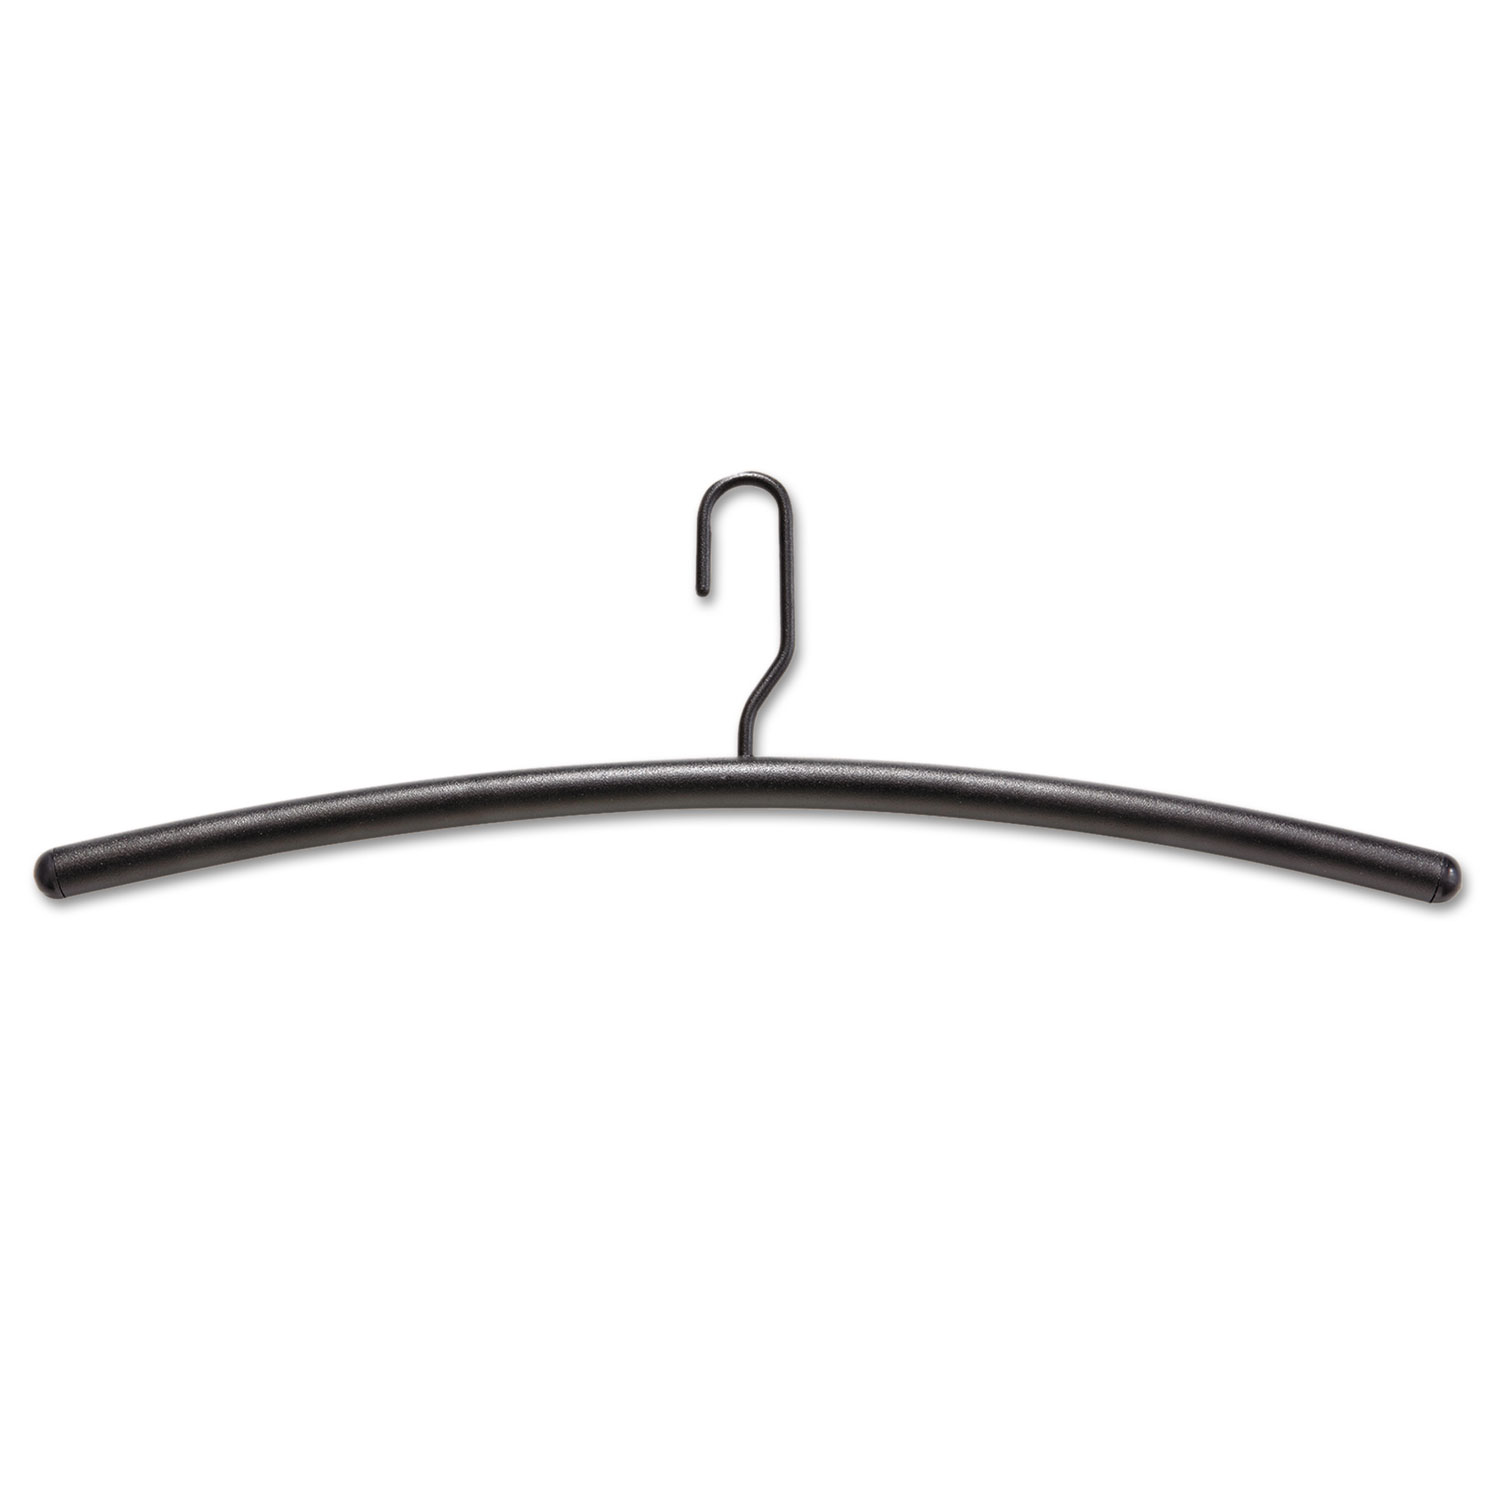 Impromptu Garment Rack Hangers, Steel, Black, 12/Pack